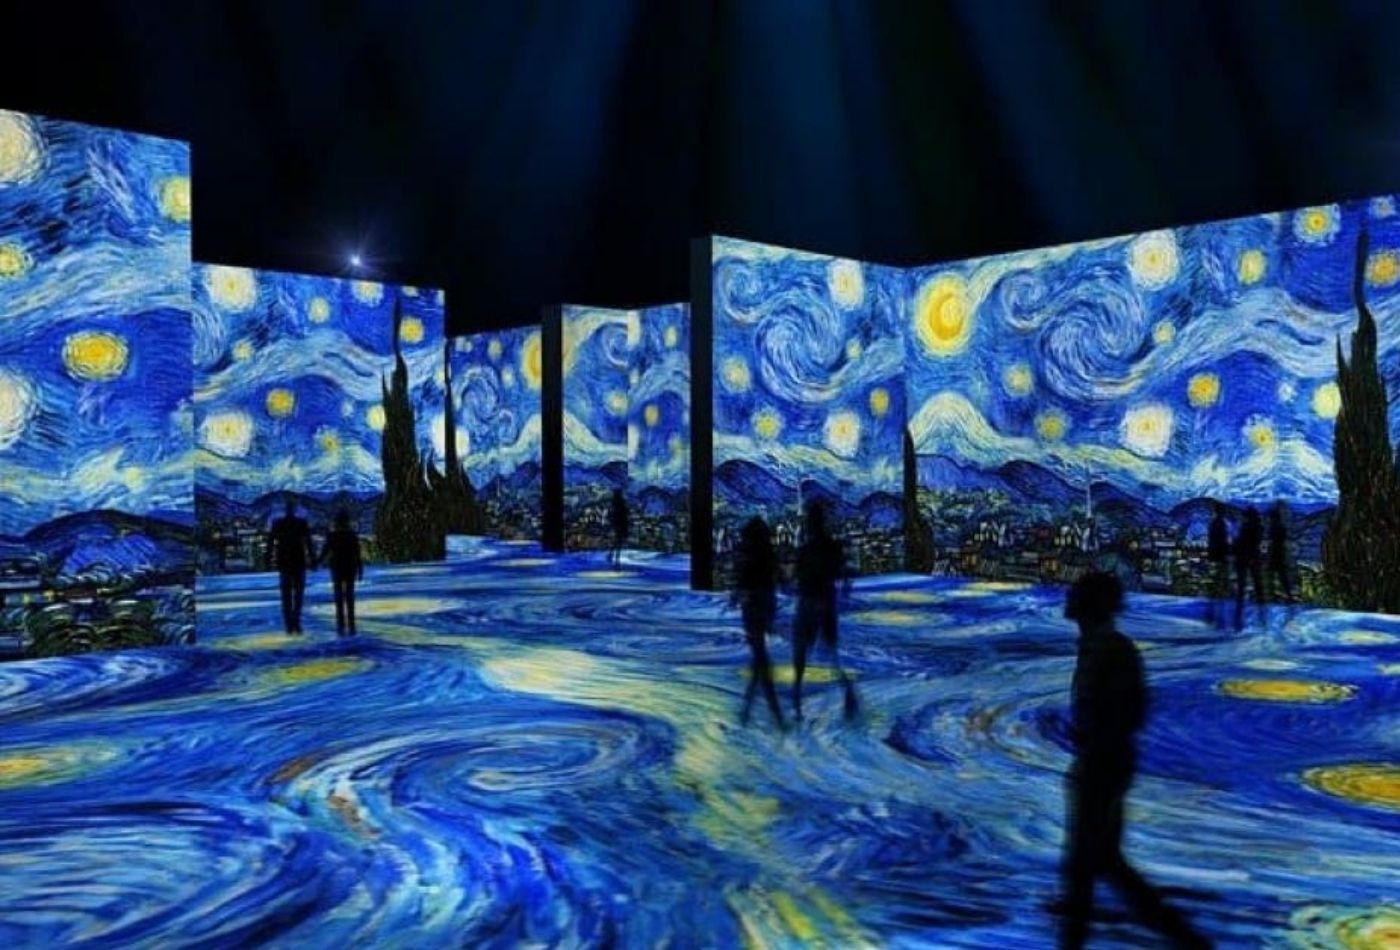 Exposición inmersiva 'El mundo de Van Gogh' en Barcelona / EXPOSICIÓN VAN GOGH